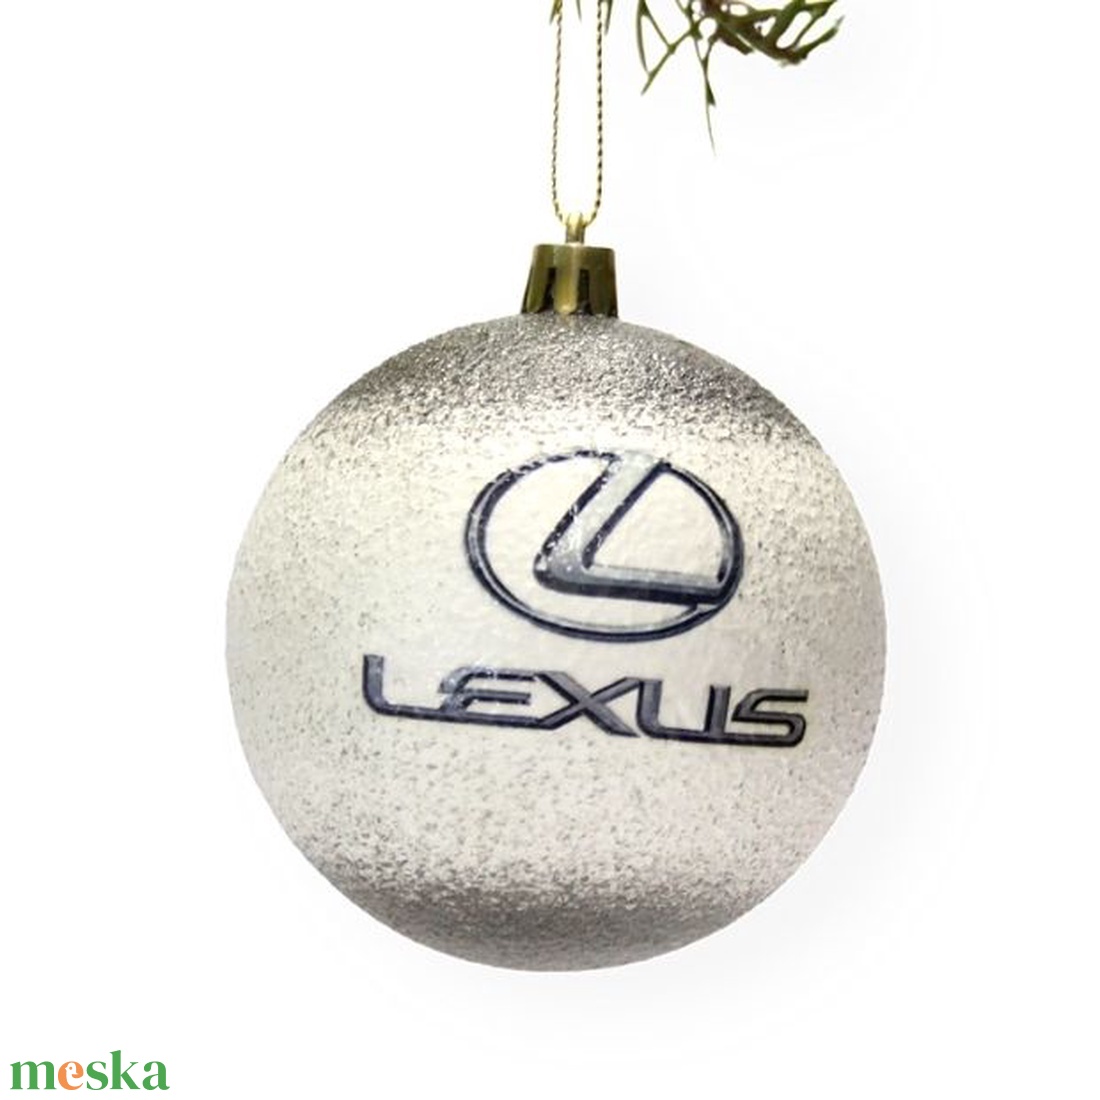 Karácsonyfa gömb autó témájú emblémával -LEXUS -  párodnak; szerelmednek  mikulásra és karácsonyra  - karácsony - karácsonyi lakásdekoráció - karácsonyfadíszek - Meska.hu